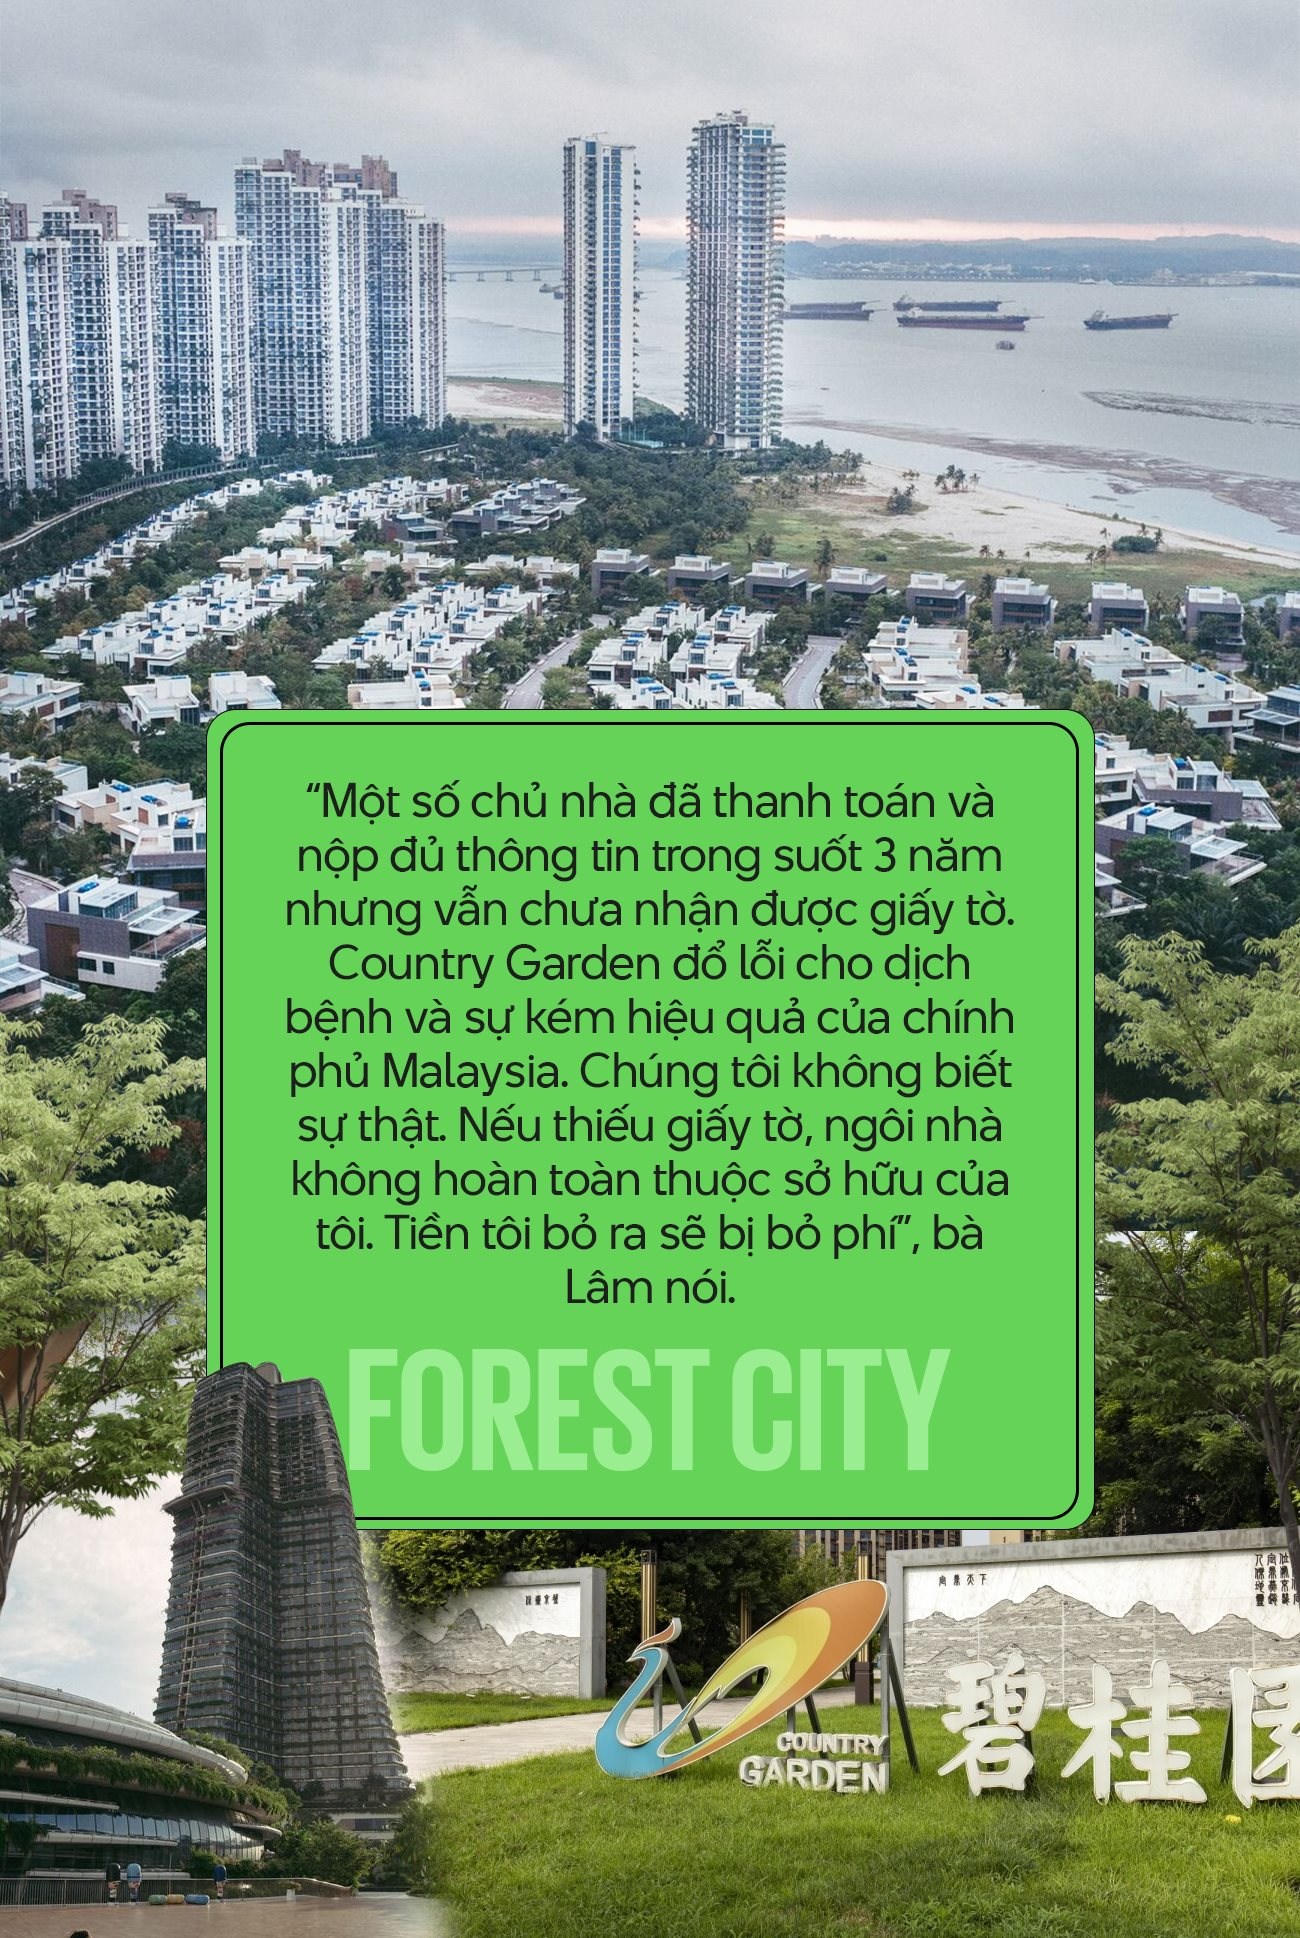 Forest City - ‘Cạm bẫy 5 sao’ của Country Garden: Nhà mua 6 năm chưa có giấy tờ, chủ căn hộ không thể bán hay cho thuê vì chẳng ai dám đến - Ảnh 4.